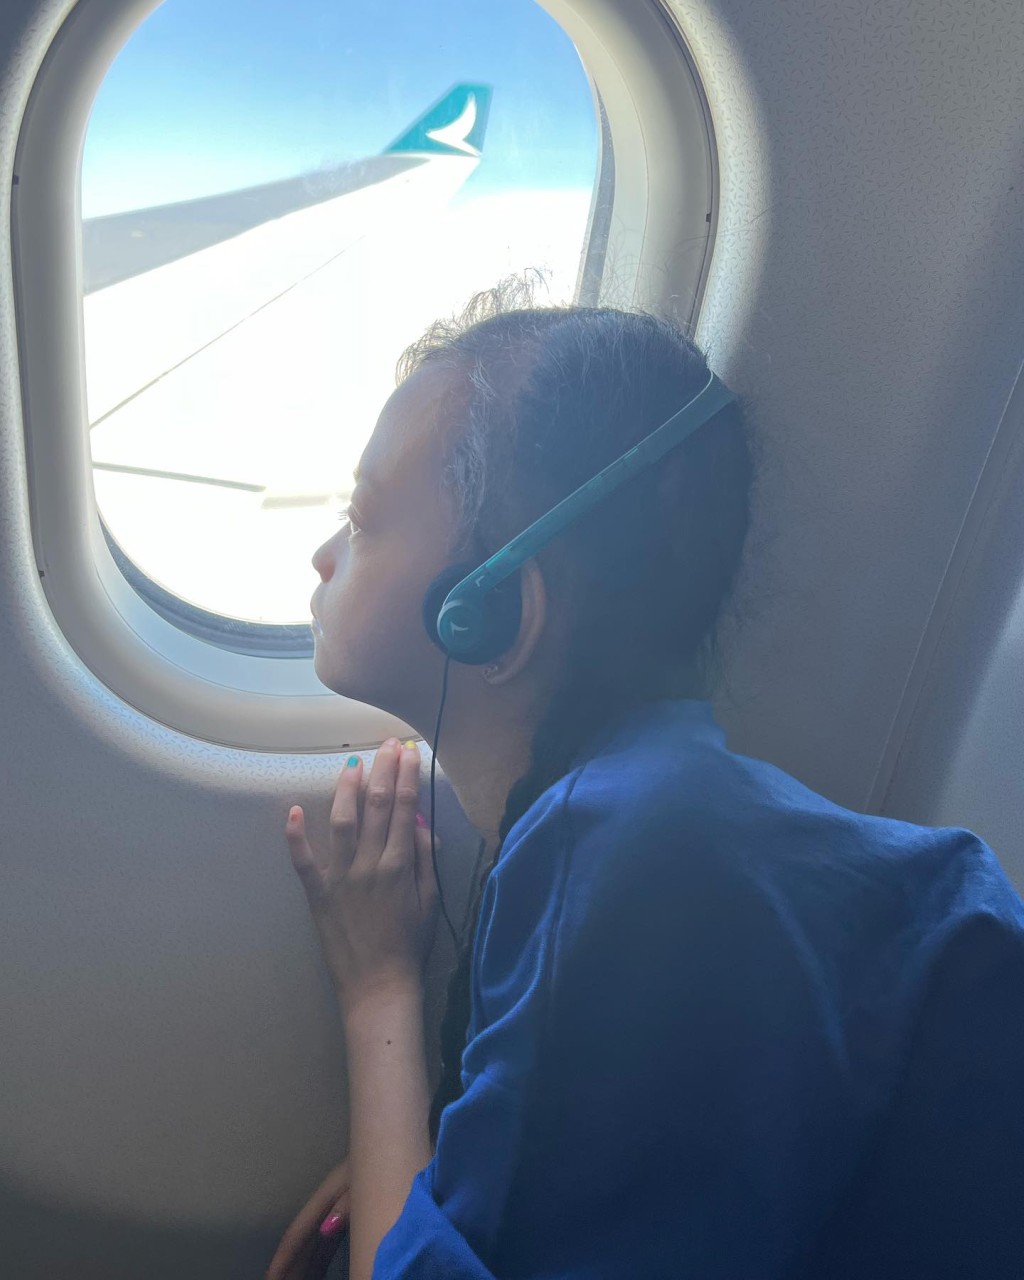 鍾麗淇早前帶大女首次搭飛機。